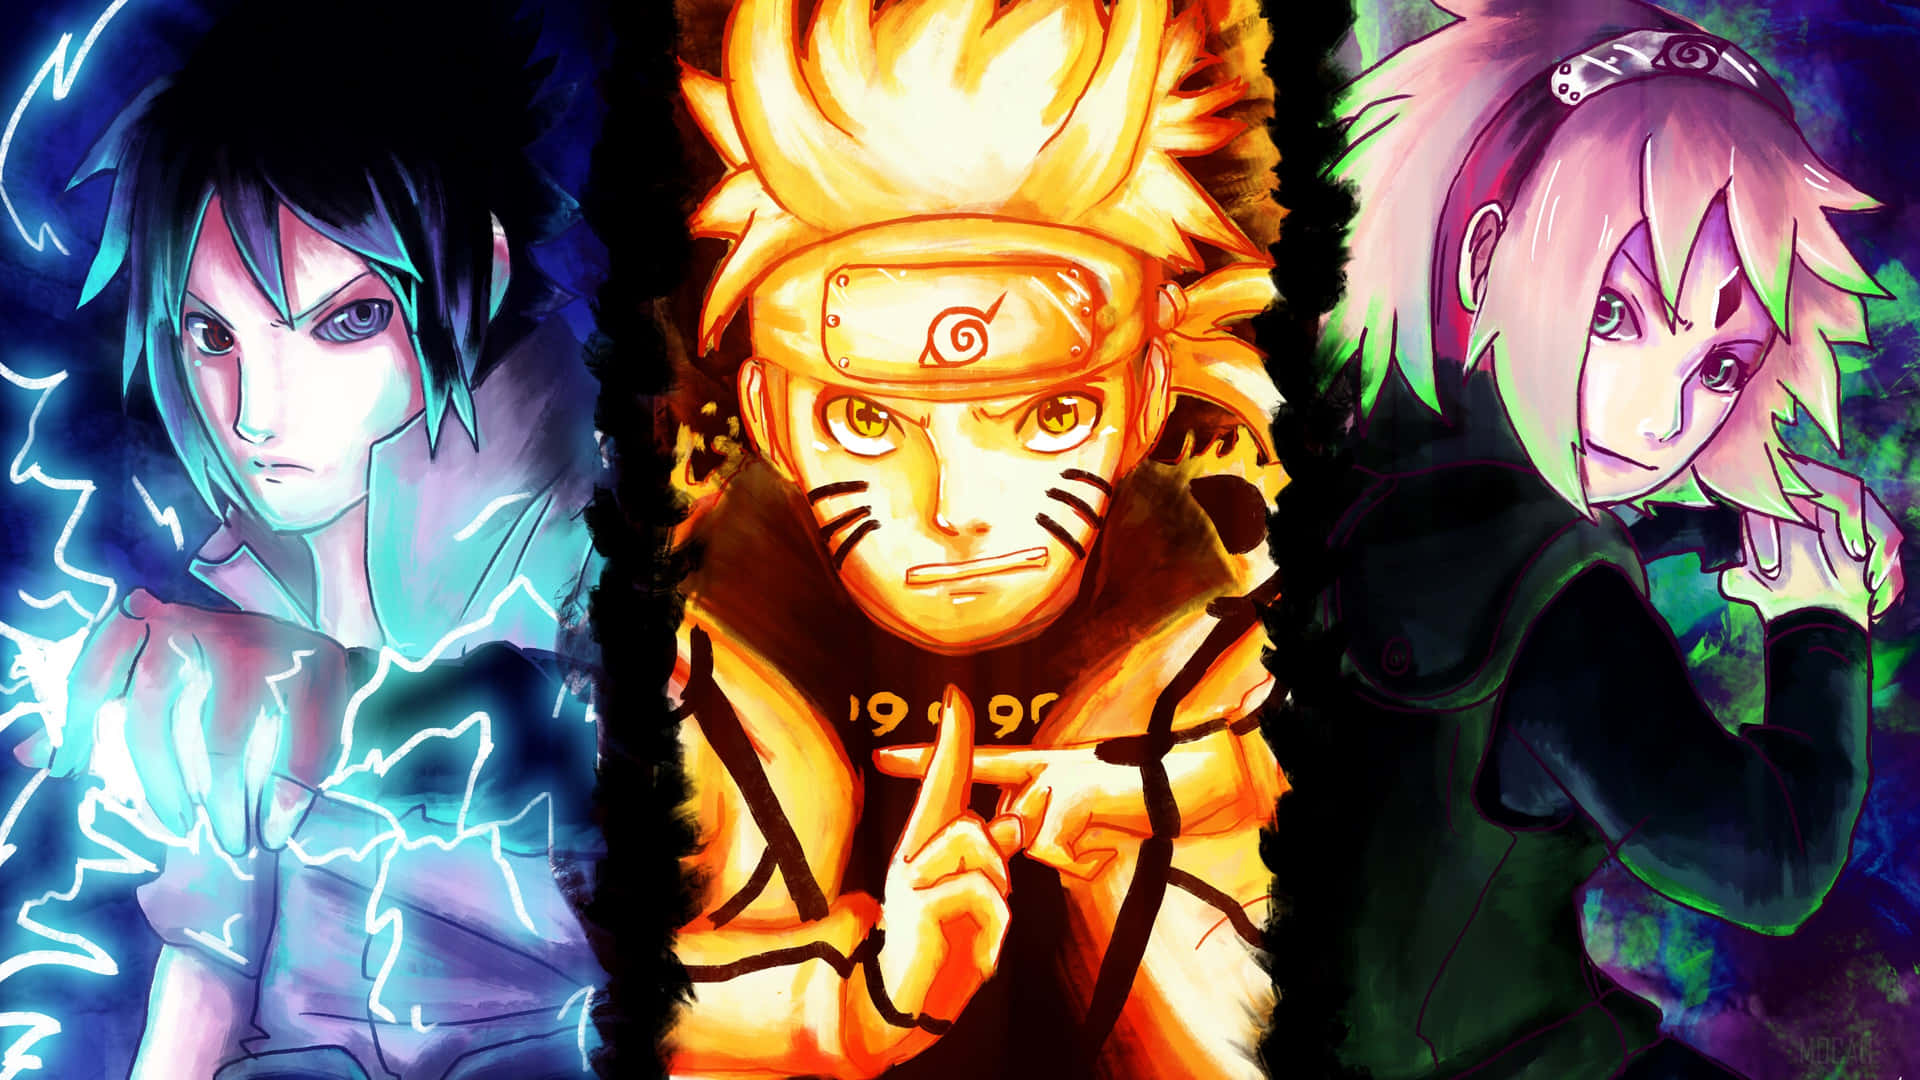 Naruto Uzumaki: Naruto Uzumaki - hé lộ một trong những nhân vật Anime được yêu thích nhất mọi thời đại. Với sức mạnh đáng kinh ngạc, anh đã đánh bại các kẻ thù hùng mạnh và giành được trái tim của hàng triệu người hâm mộ trên toàn thế giới. Đừng bỏ lỡ cơ hội khám phá thế giới đầy bí ẩn của Naruto với hình ảnh liên quan đến anh ta.